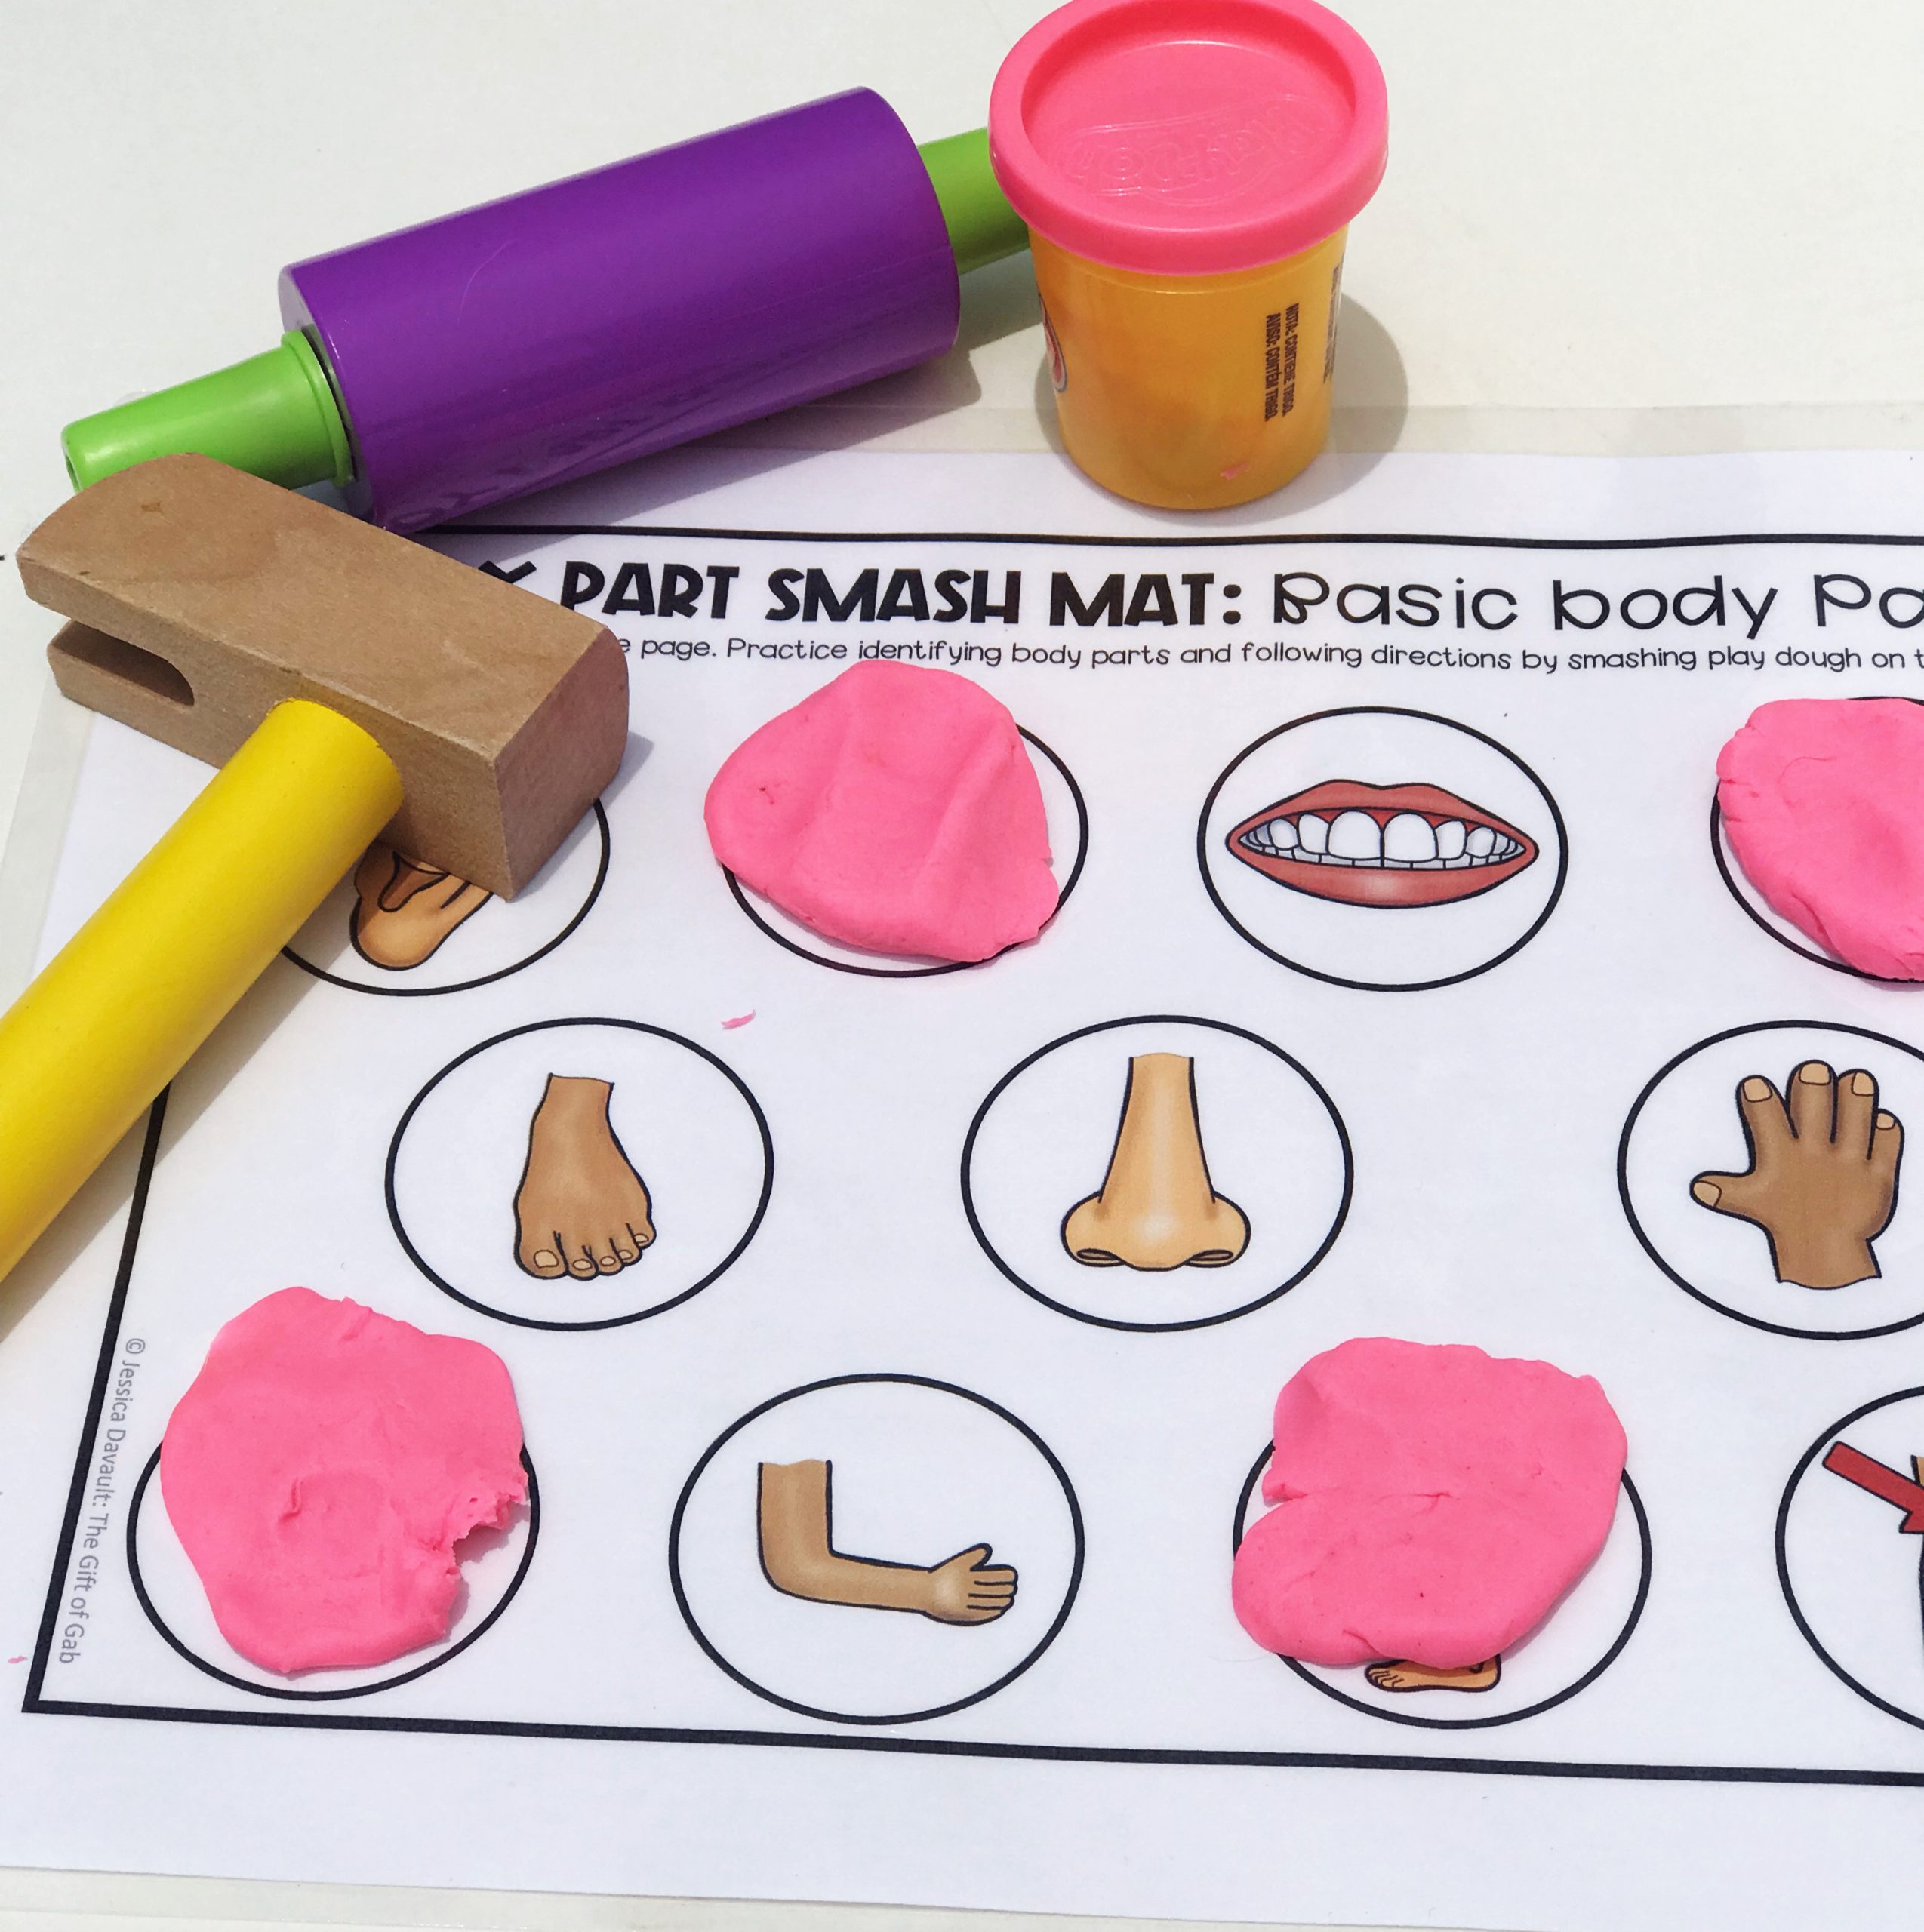 Body Part Play Dough Smash Mat